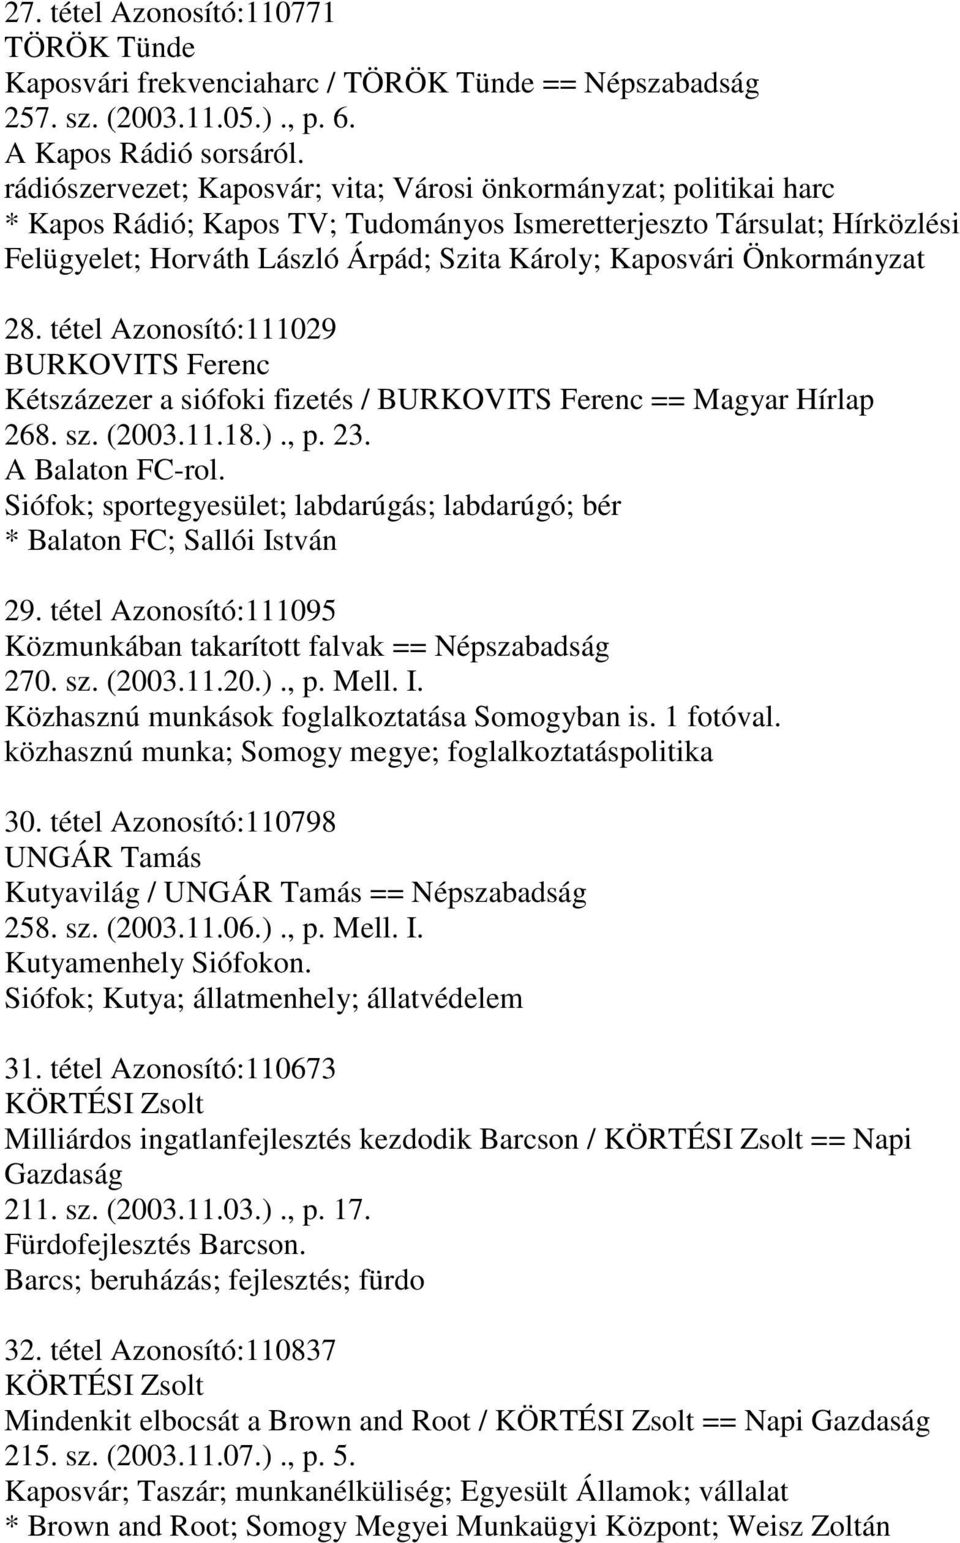 Önkormányzat 28. tétel Azonosító:111029 BURKOVITS Ferenc Kétszázezer a siófoki fizetés / BURKOVITS Ferenc == Magyar Hírlap 268. sz. (2003.11.18.)., p. 23. A Balaton FC-rol.